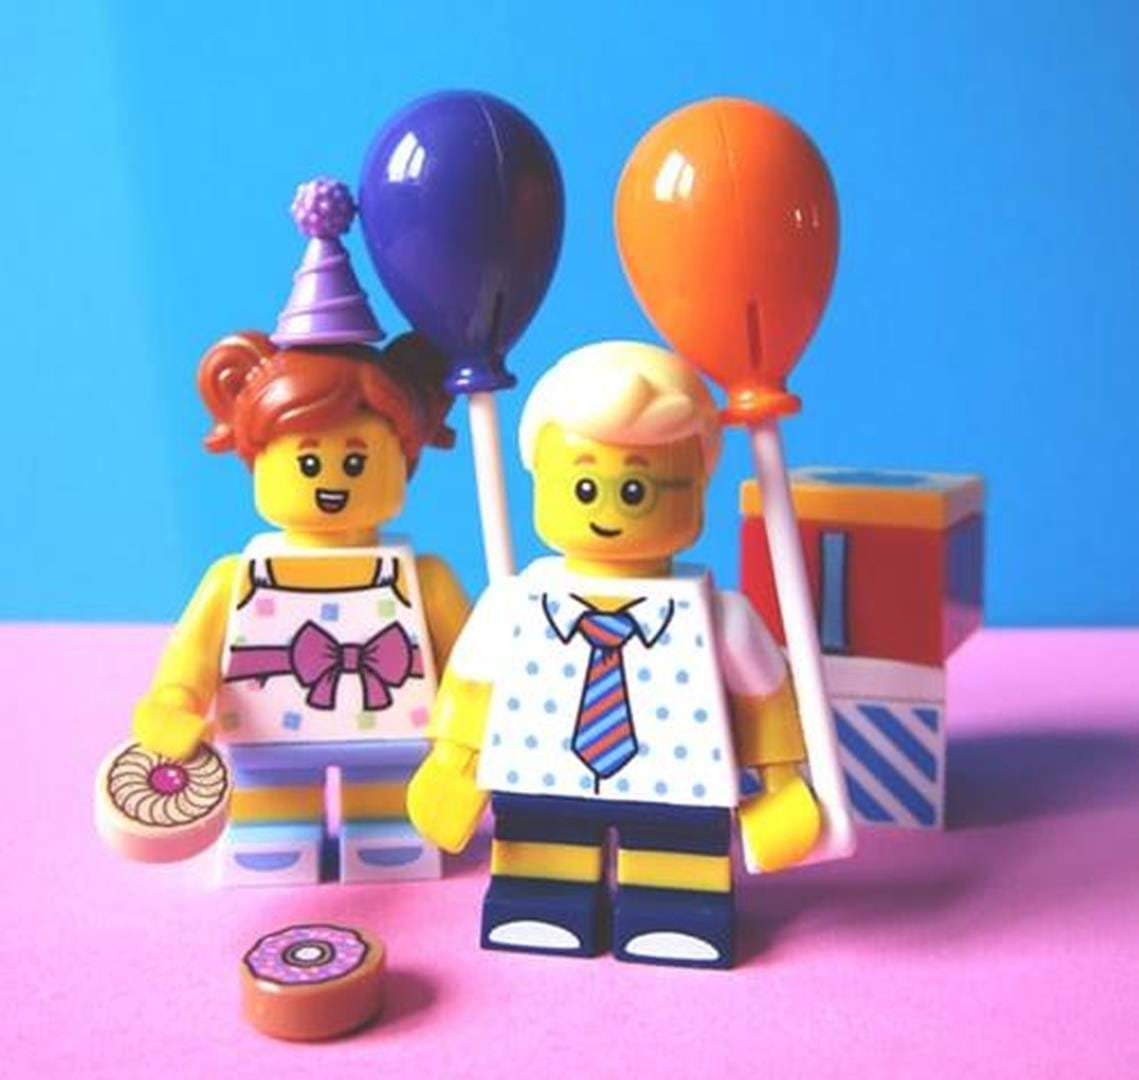 Legobirthday